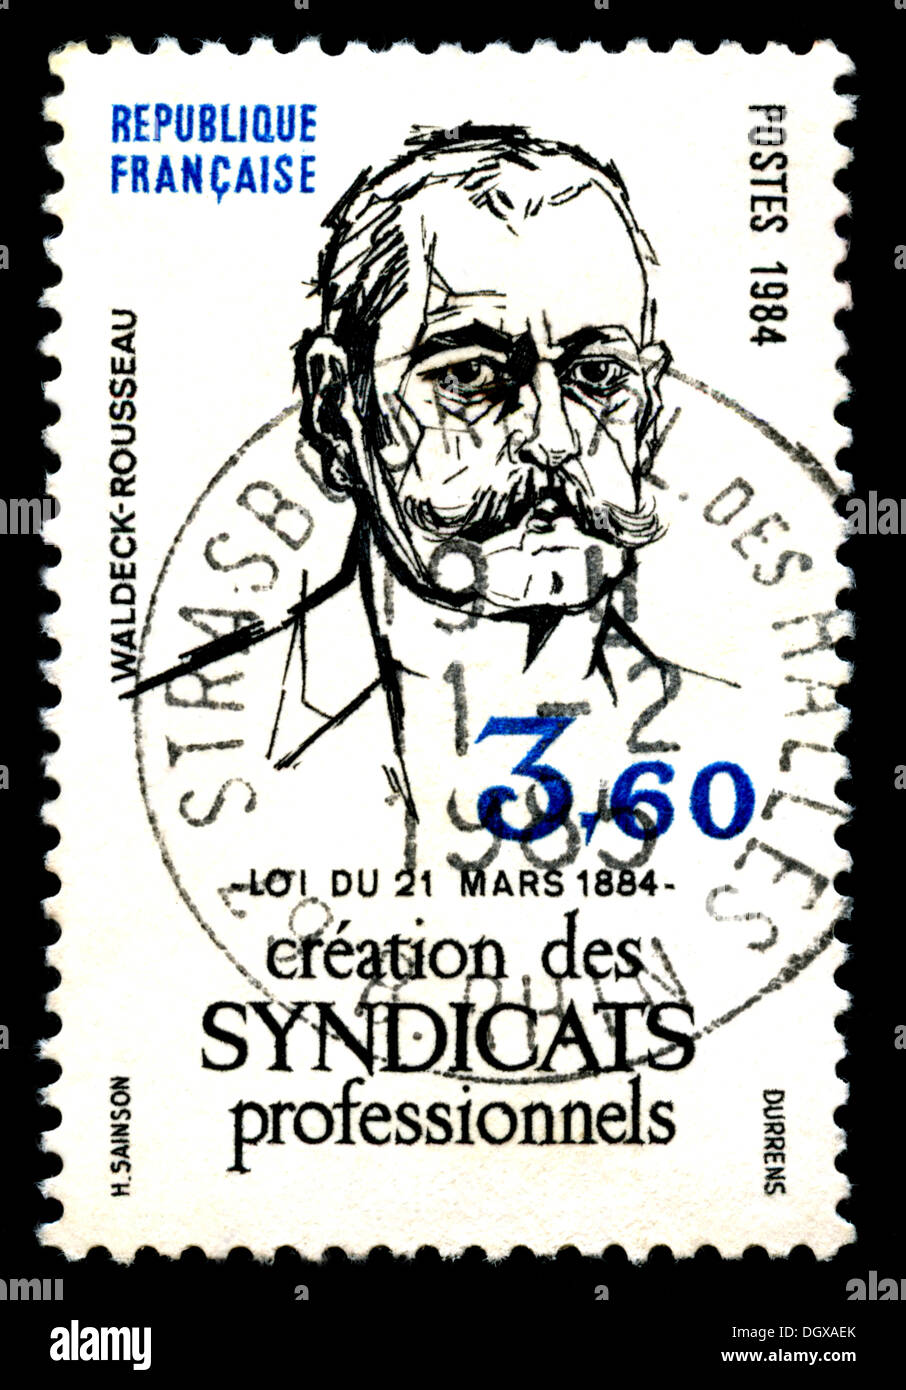 France timbre-poste représentant des syndicats professionnels, Waldeck-Rousseau Banque D'Images